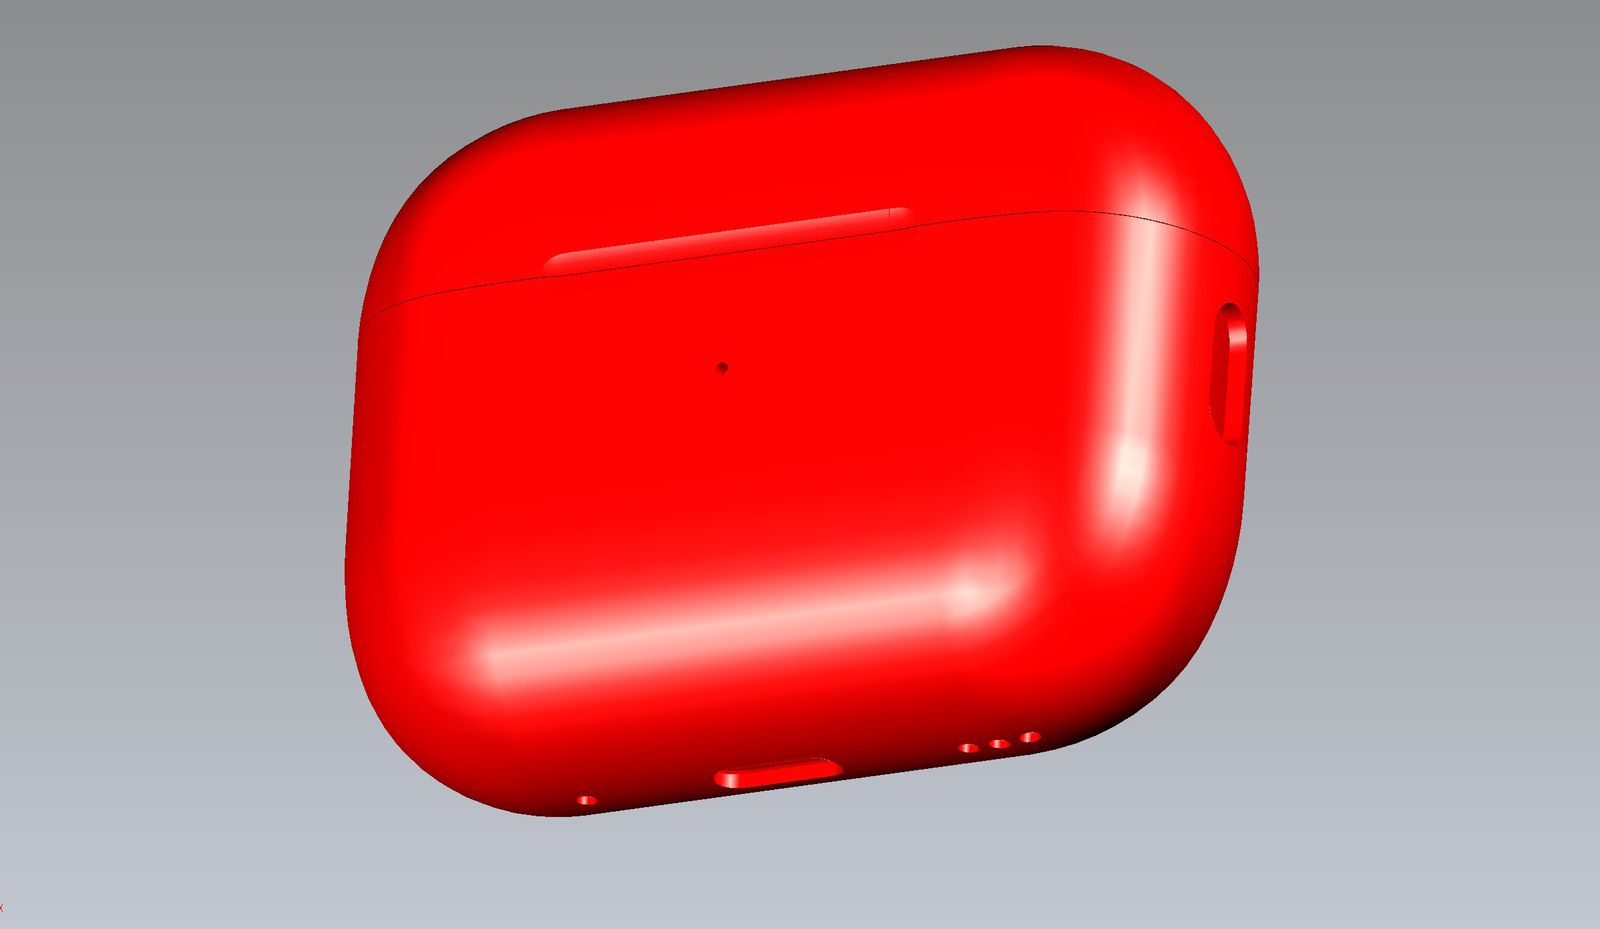 Estuche de carga Apple AirPods Pro 2 en color rojo